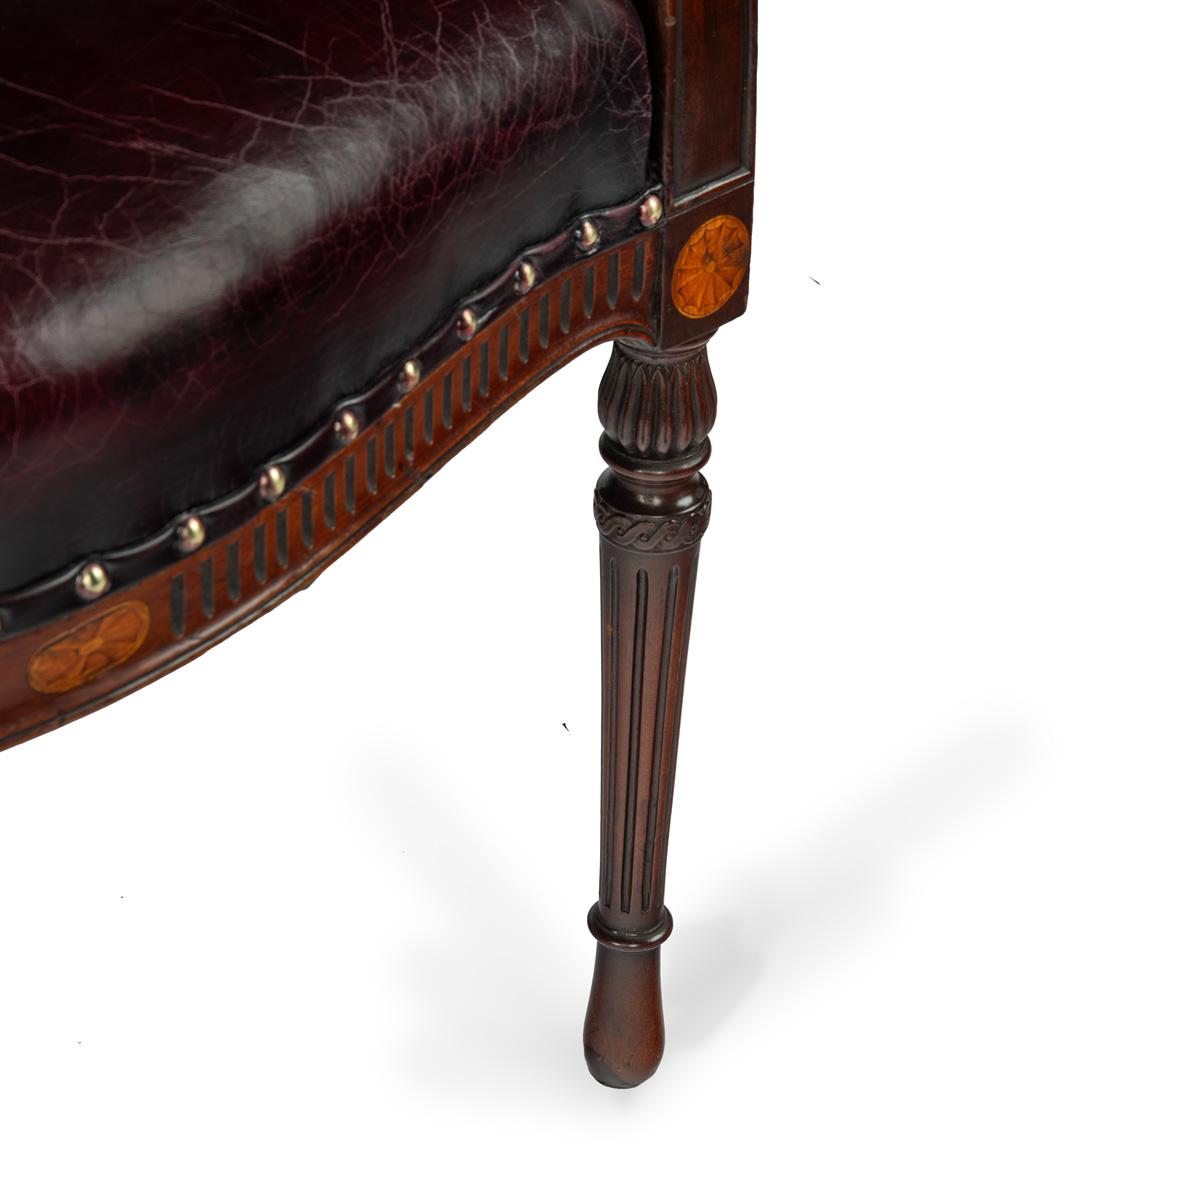 mahogany Hepplewhite style arm chairs